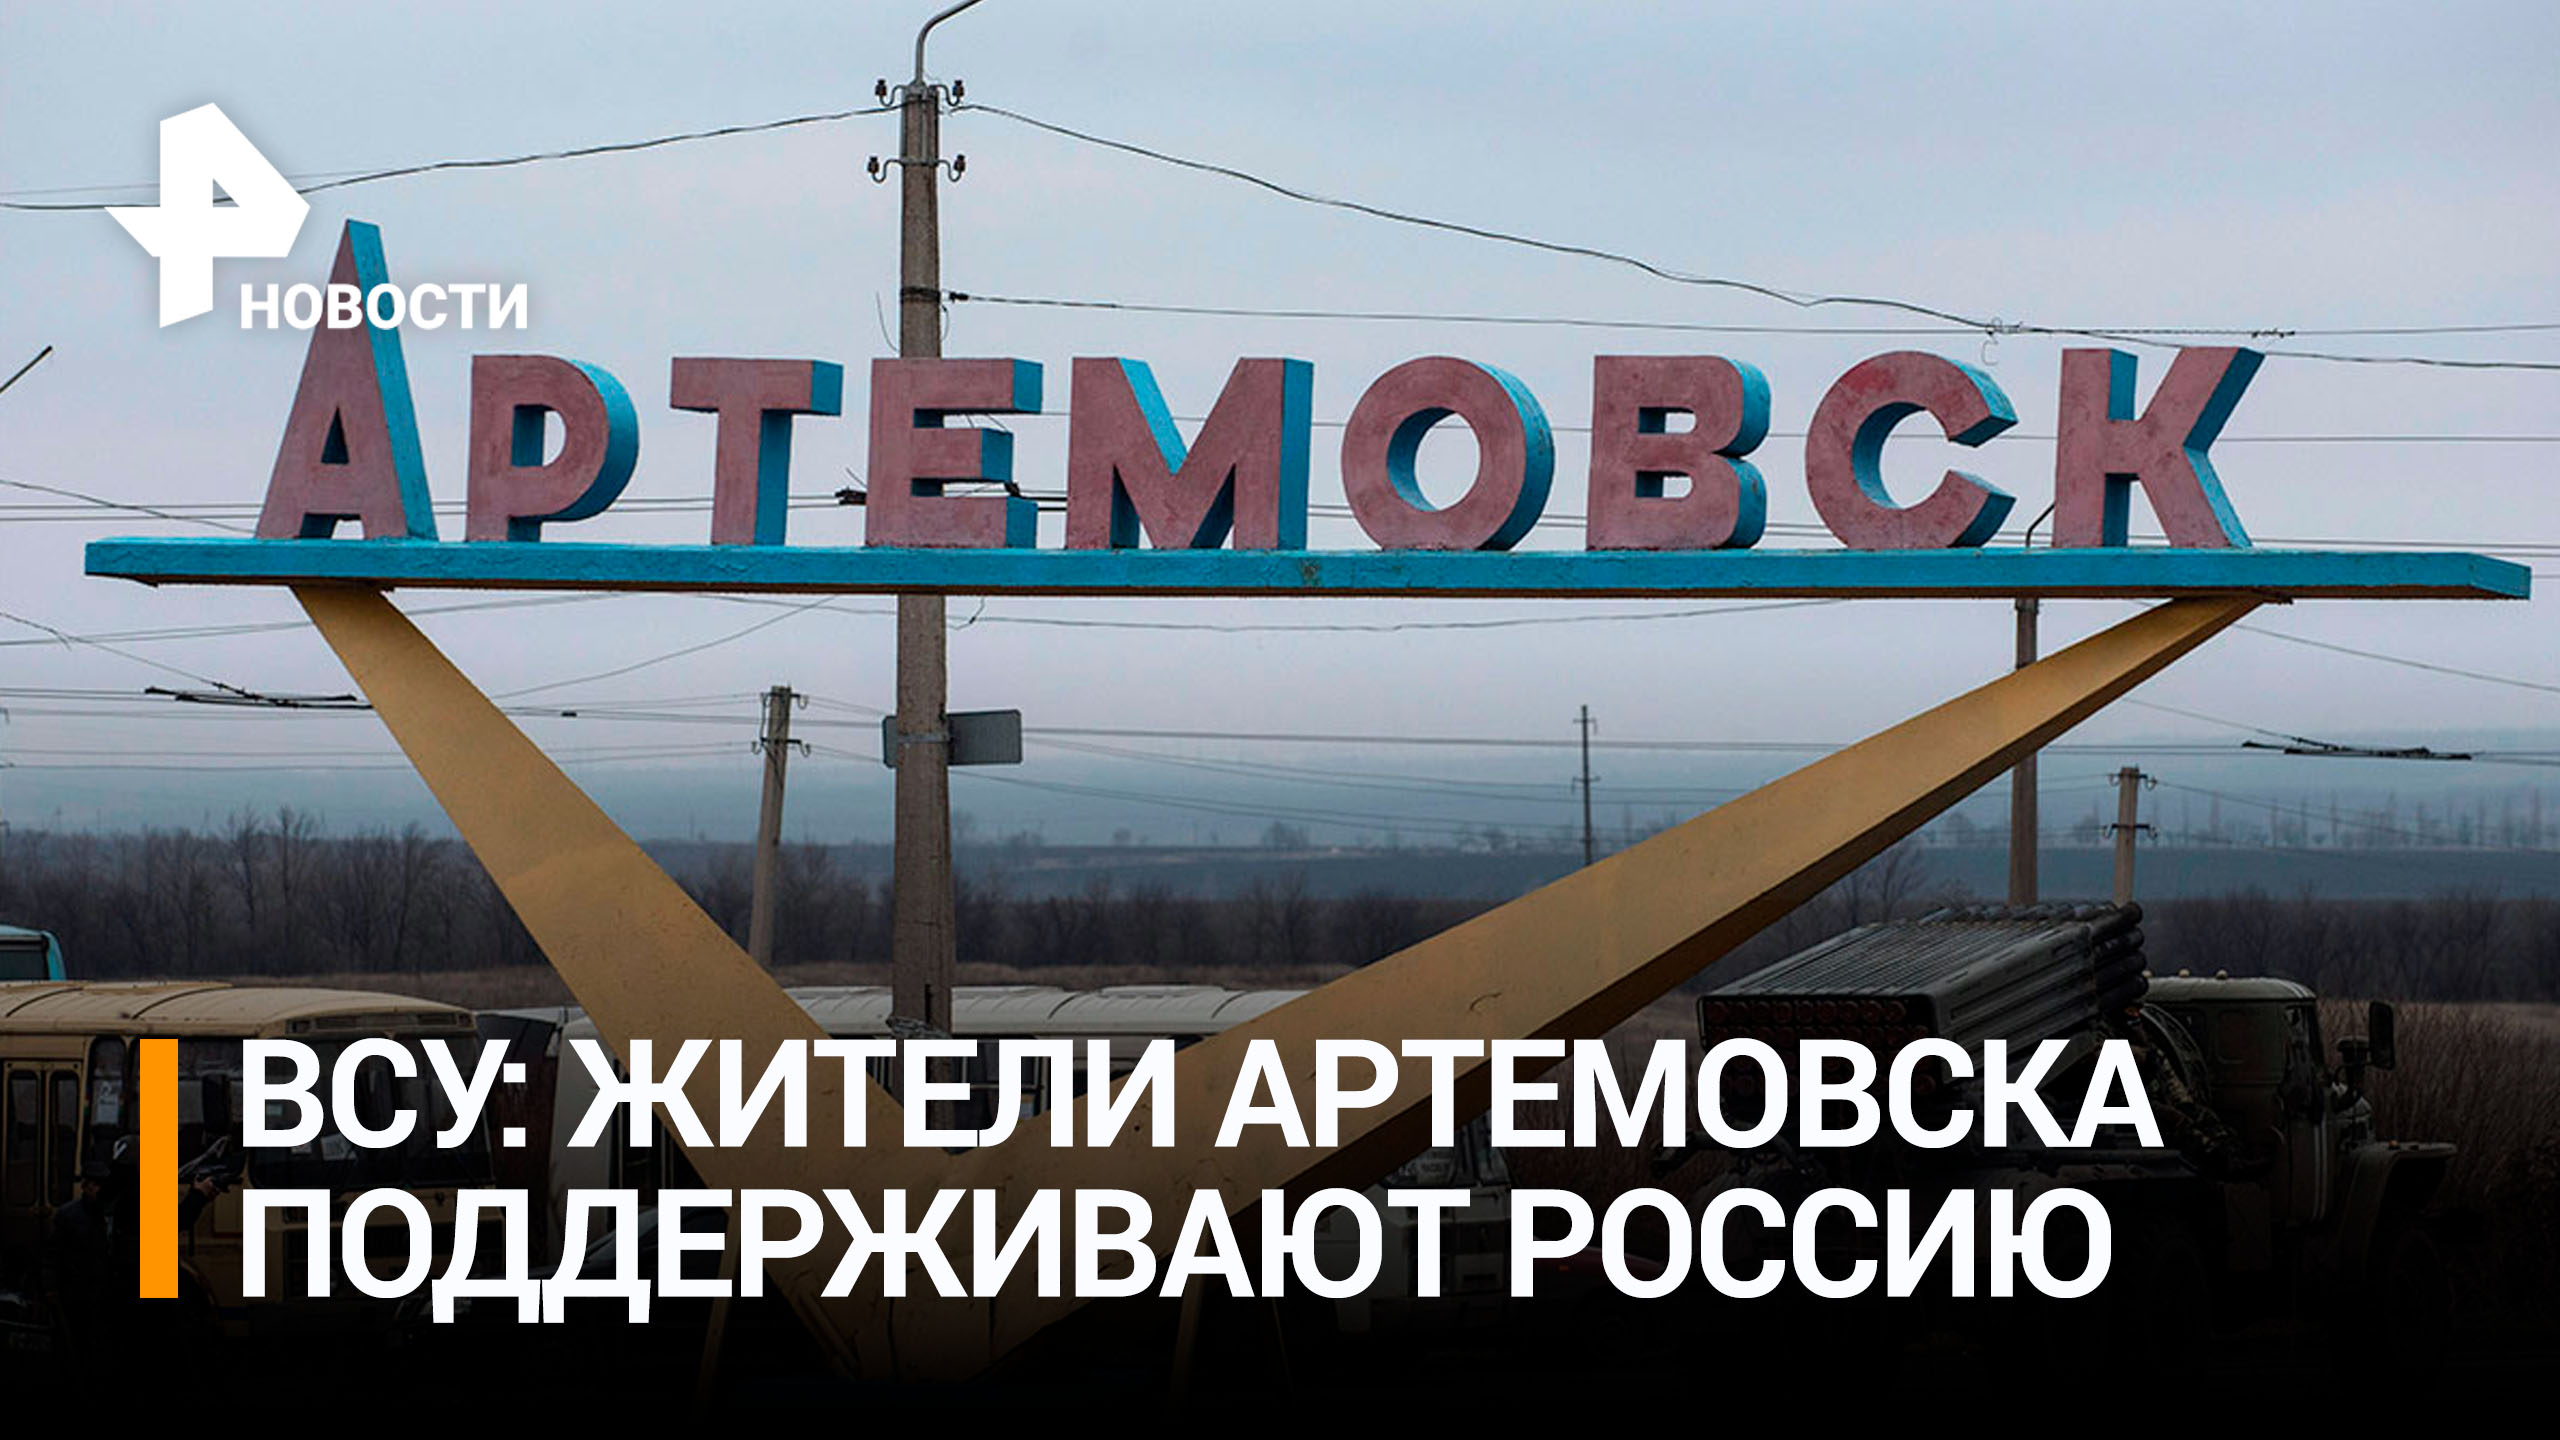 Боевики ВСУ признались, что жители Артемовска поддерживают Россию / РЕН Новости